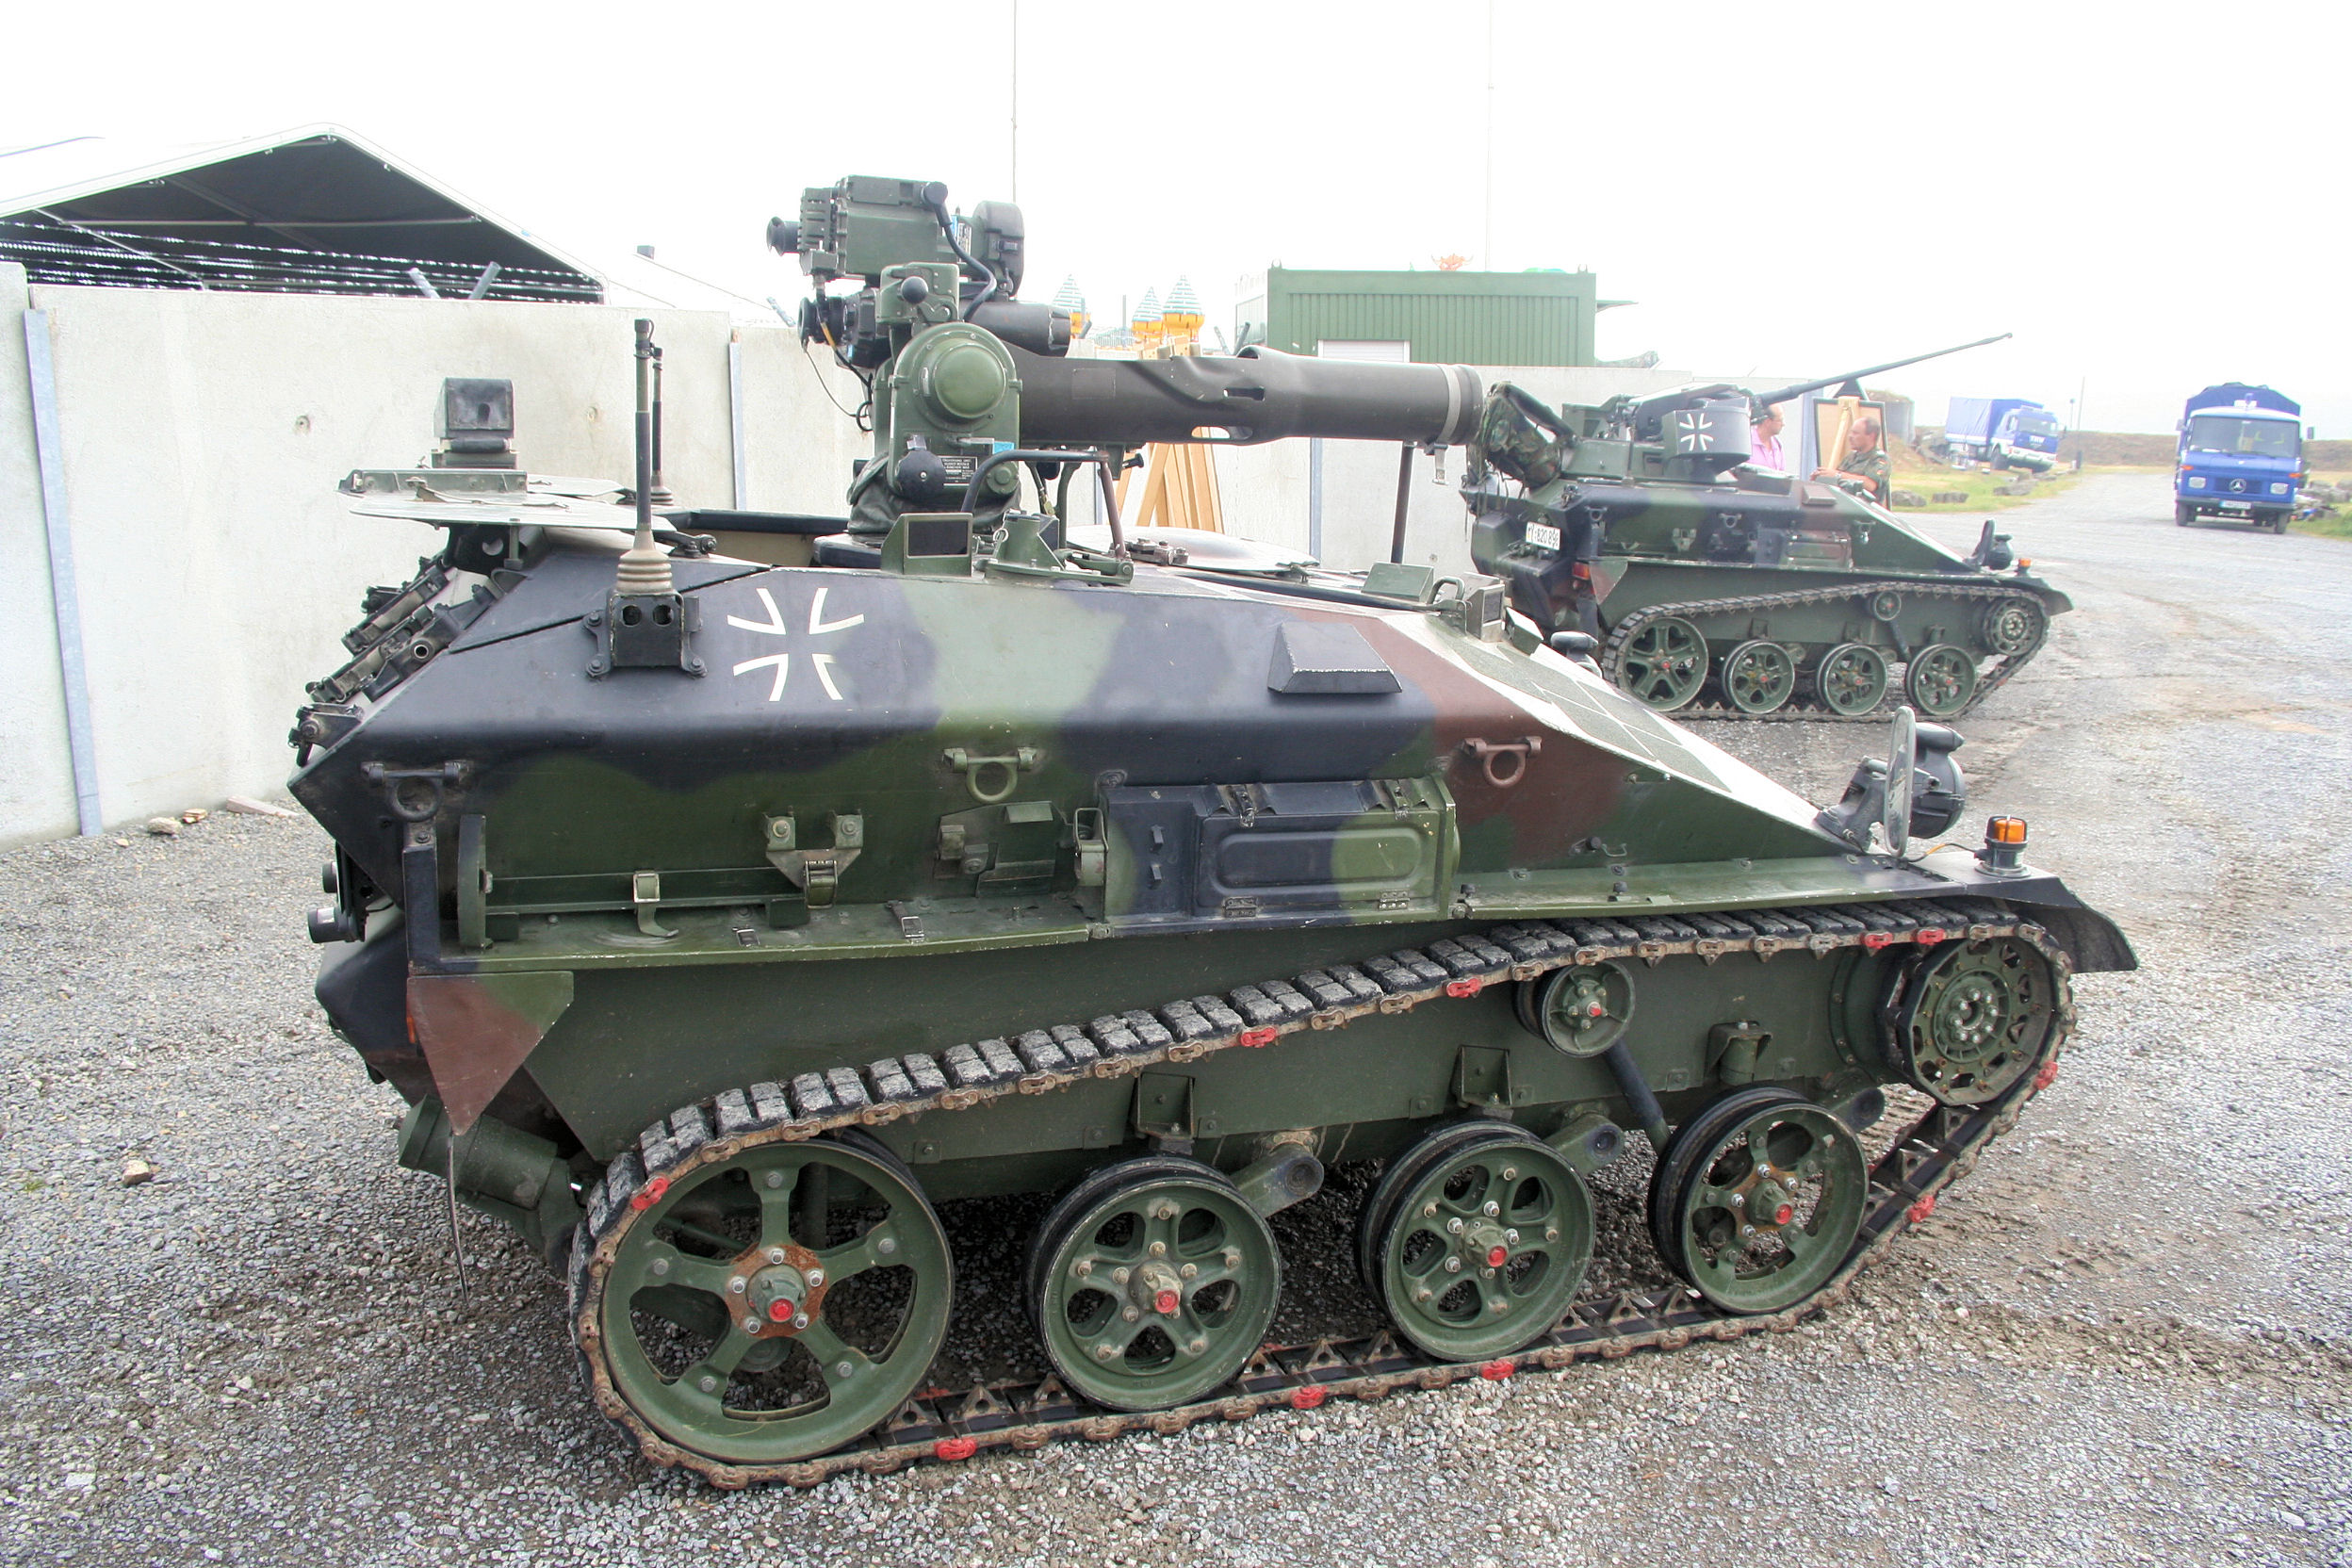 德国鼬鼠袖珍坦克,虽外型看不起眼,却具备较强突袭效率!